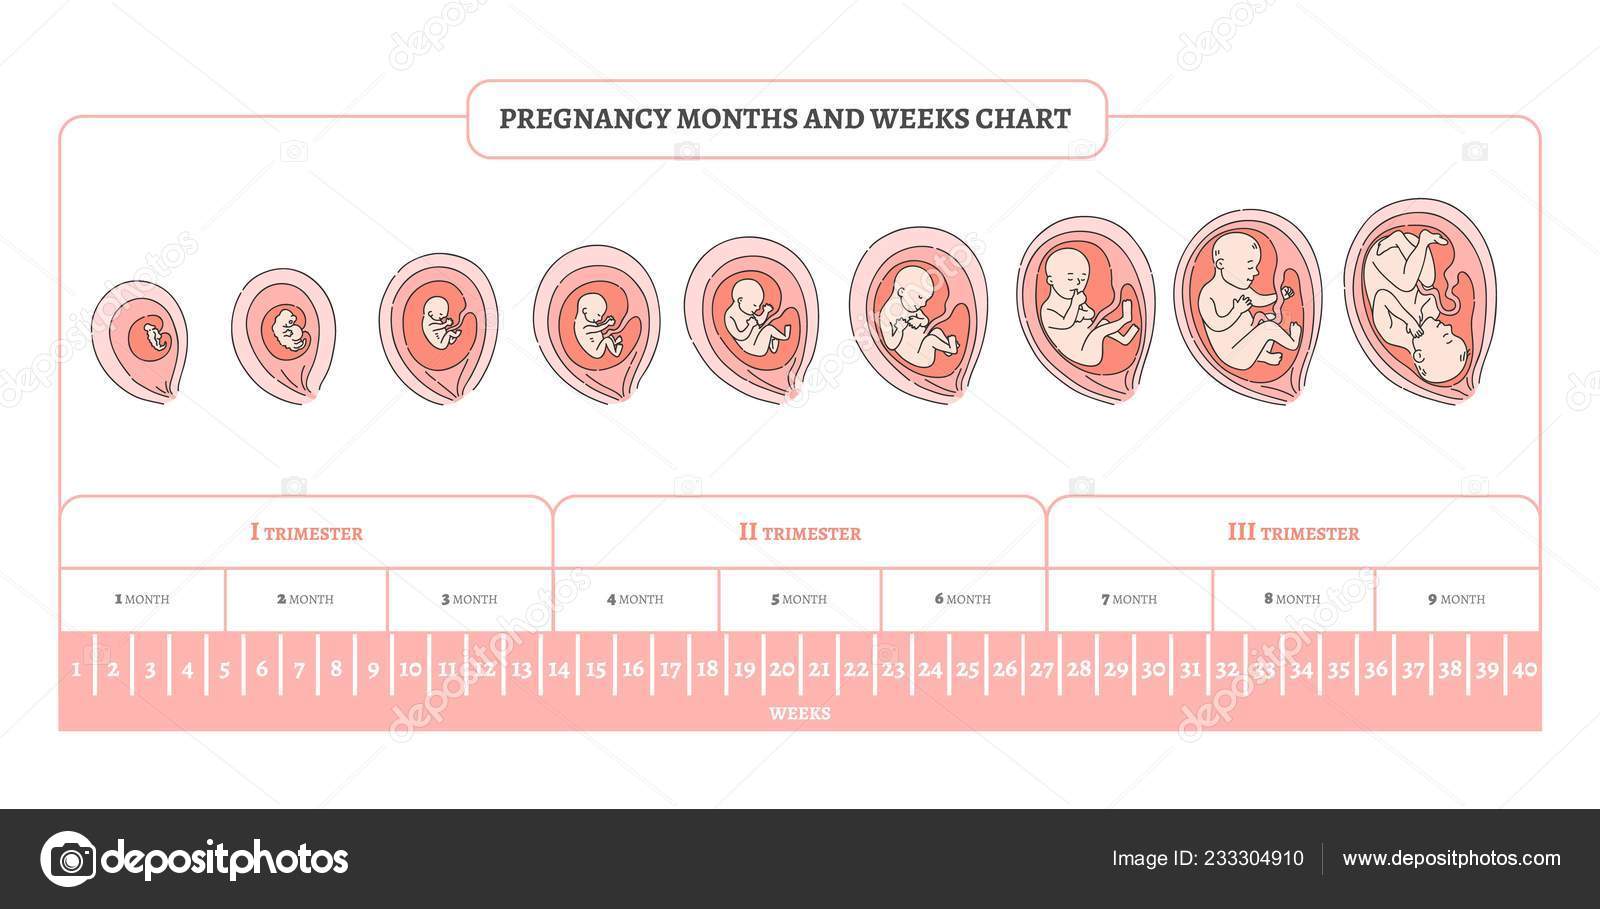 8 лет сколько недель. Периоды развития плода по неделям в картинках. Стадии формирования плода по неделям беременности. Триместры беременности по неделям и месяцам таблица. Периоды развития плода по триместрам.